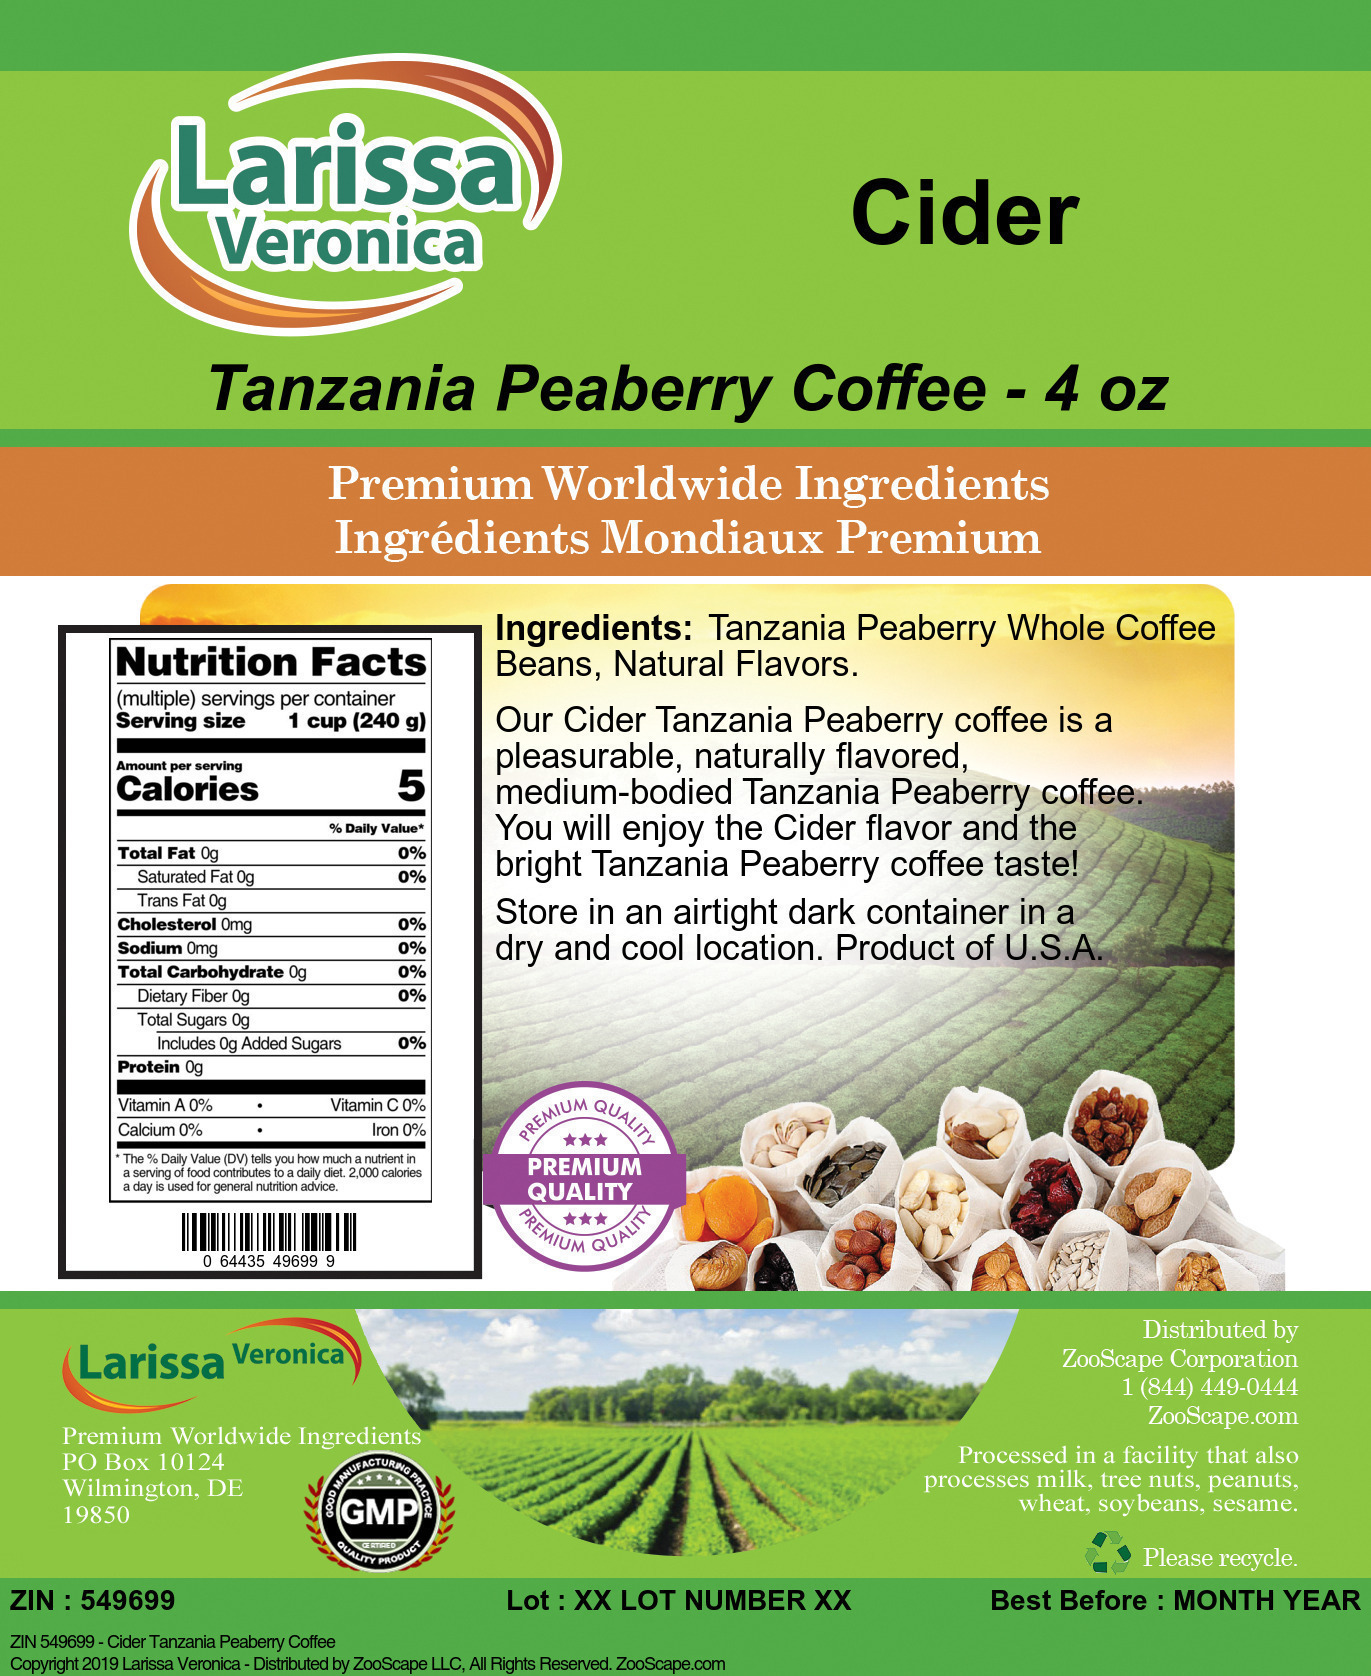 Cider Tanzania Peaberry Coffee - Label